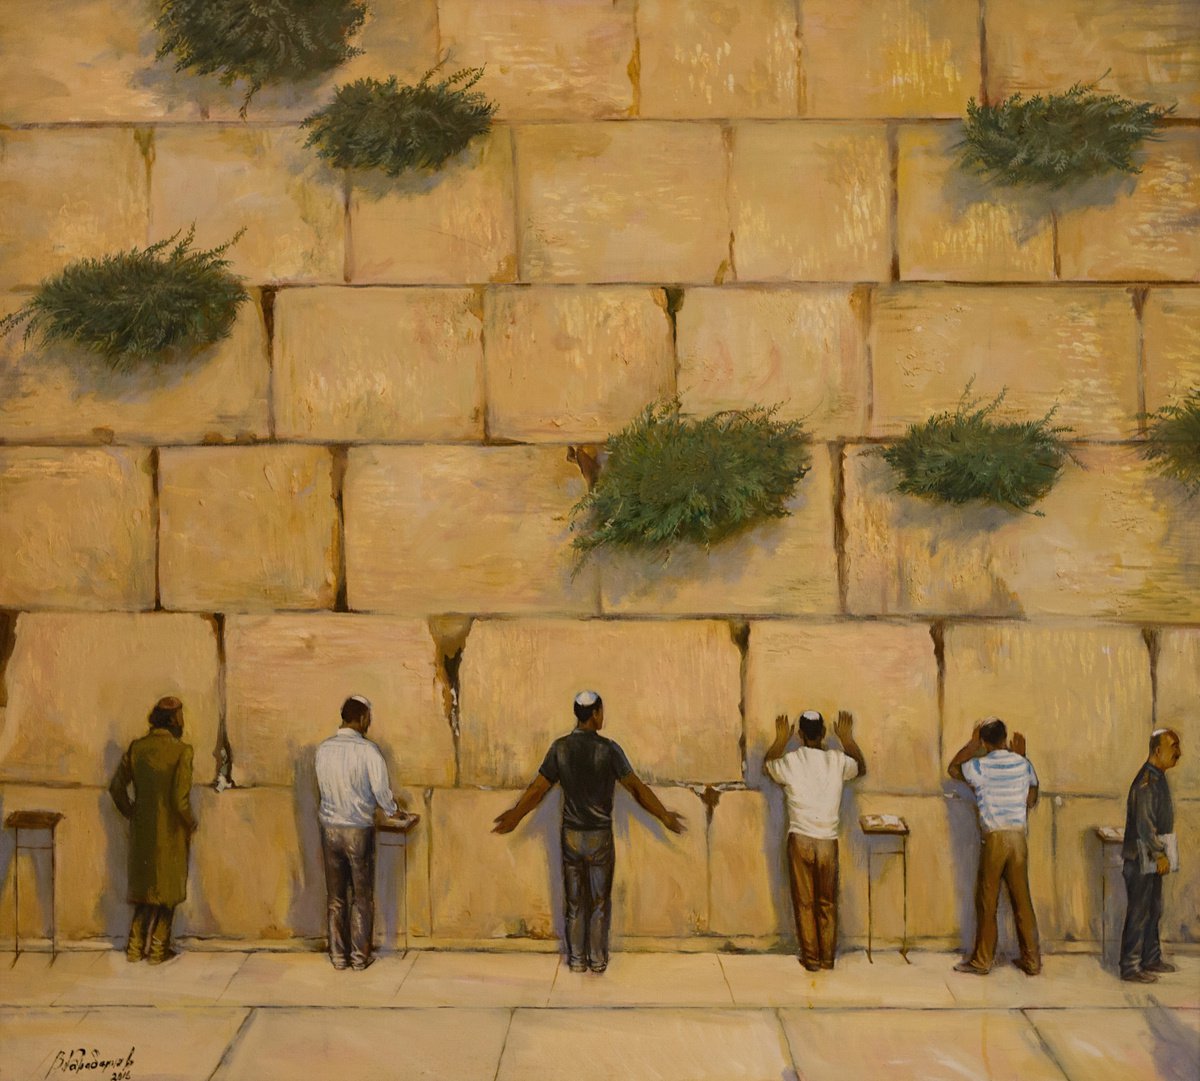 Western Wall. Jerusalem by Viktar Barabantsau